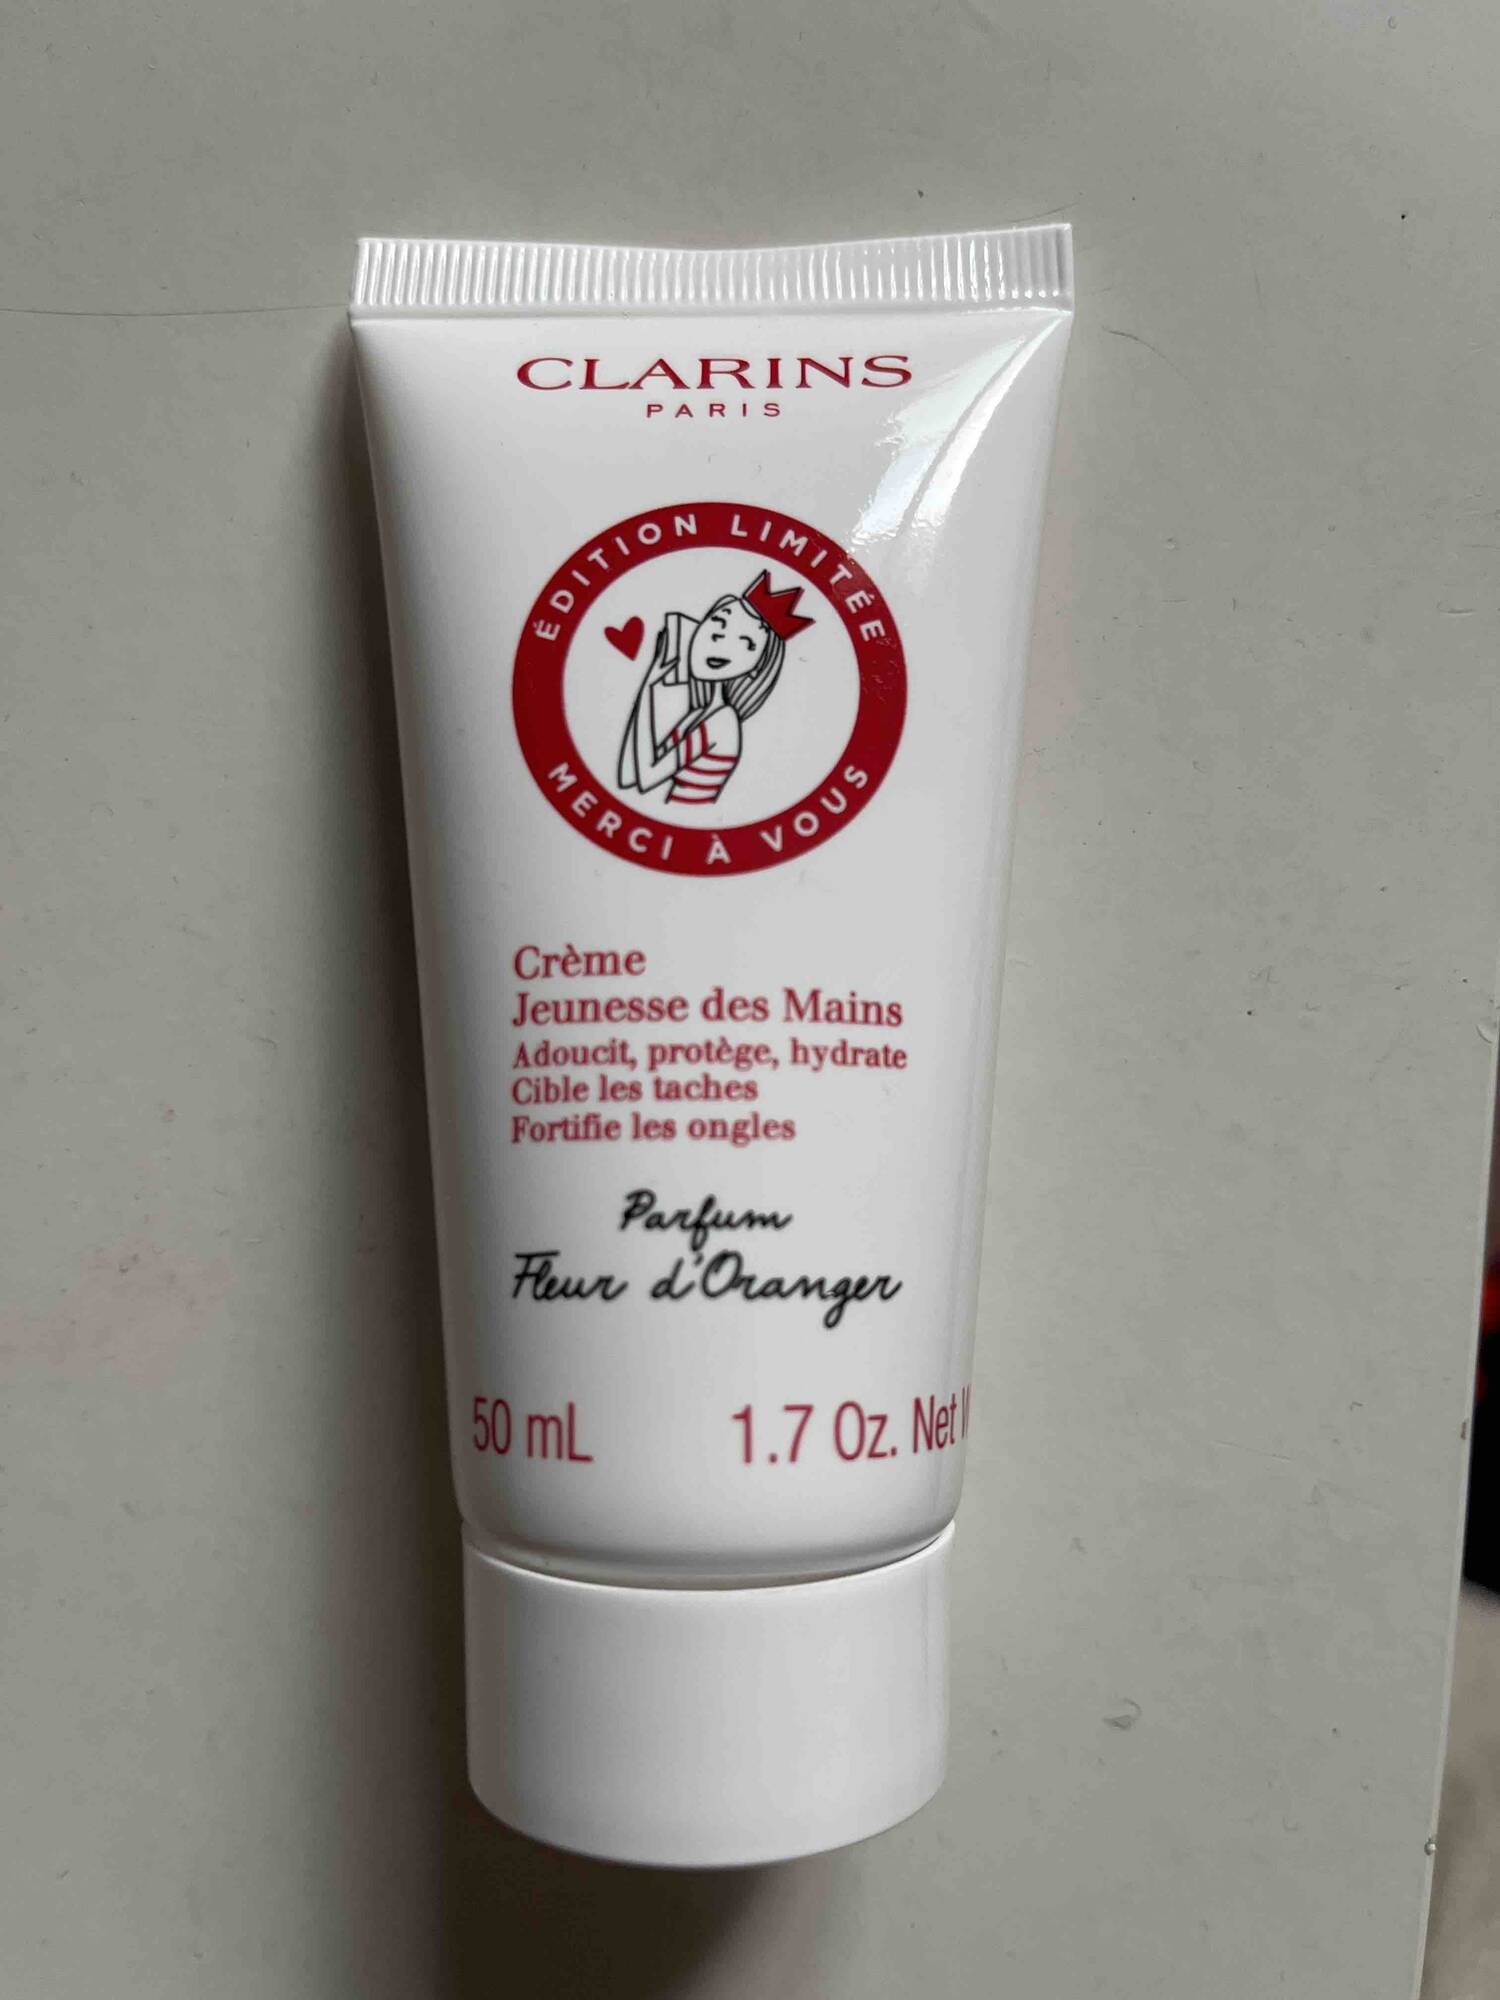 CLARINS PARIS - Crème jeunesse des mains parfum fleur d'oranger